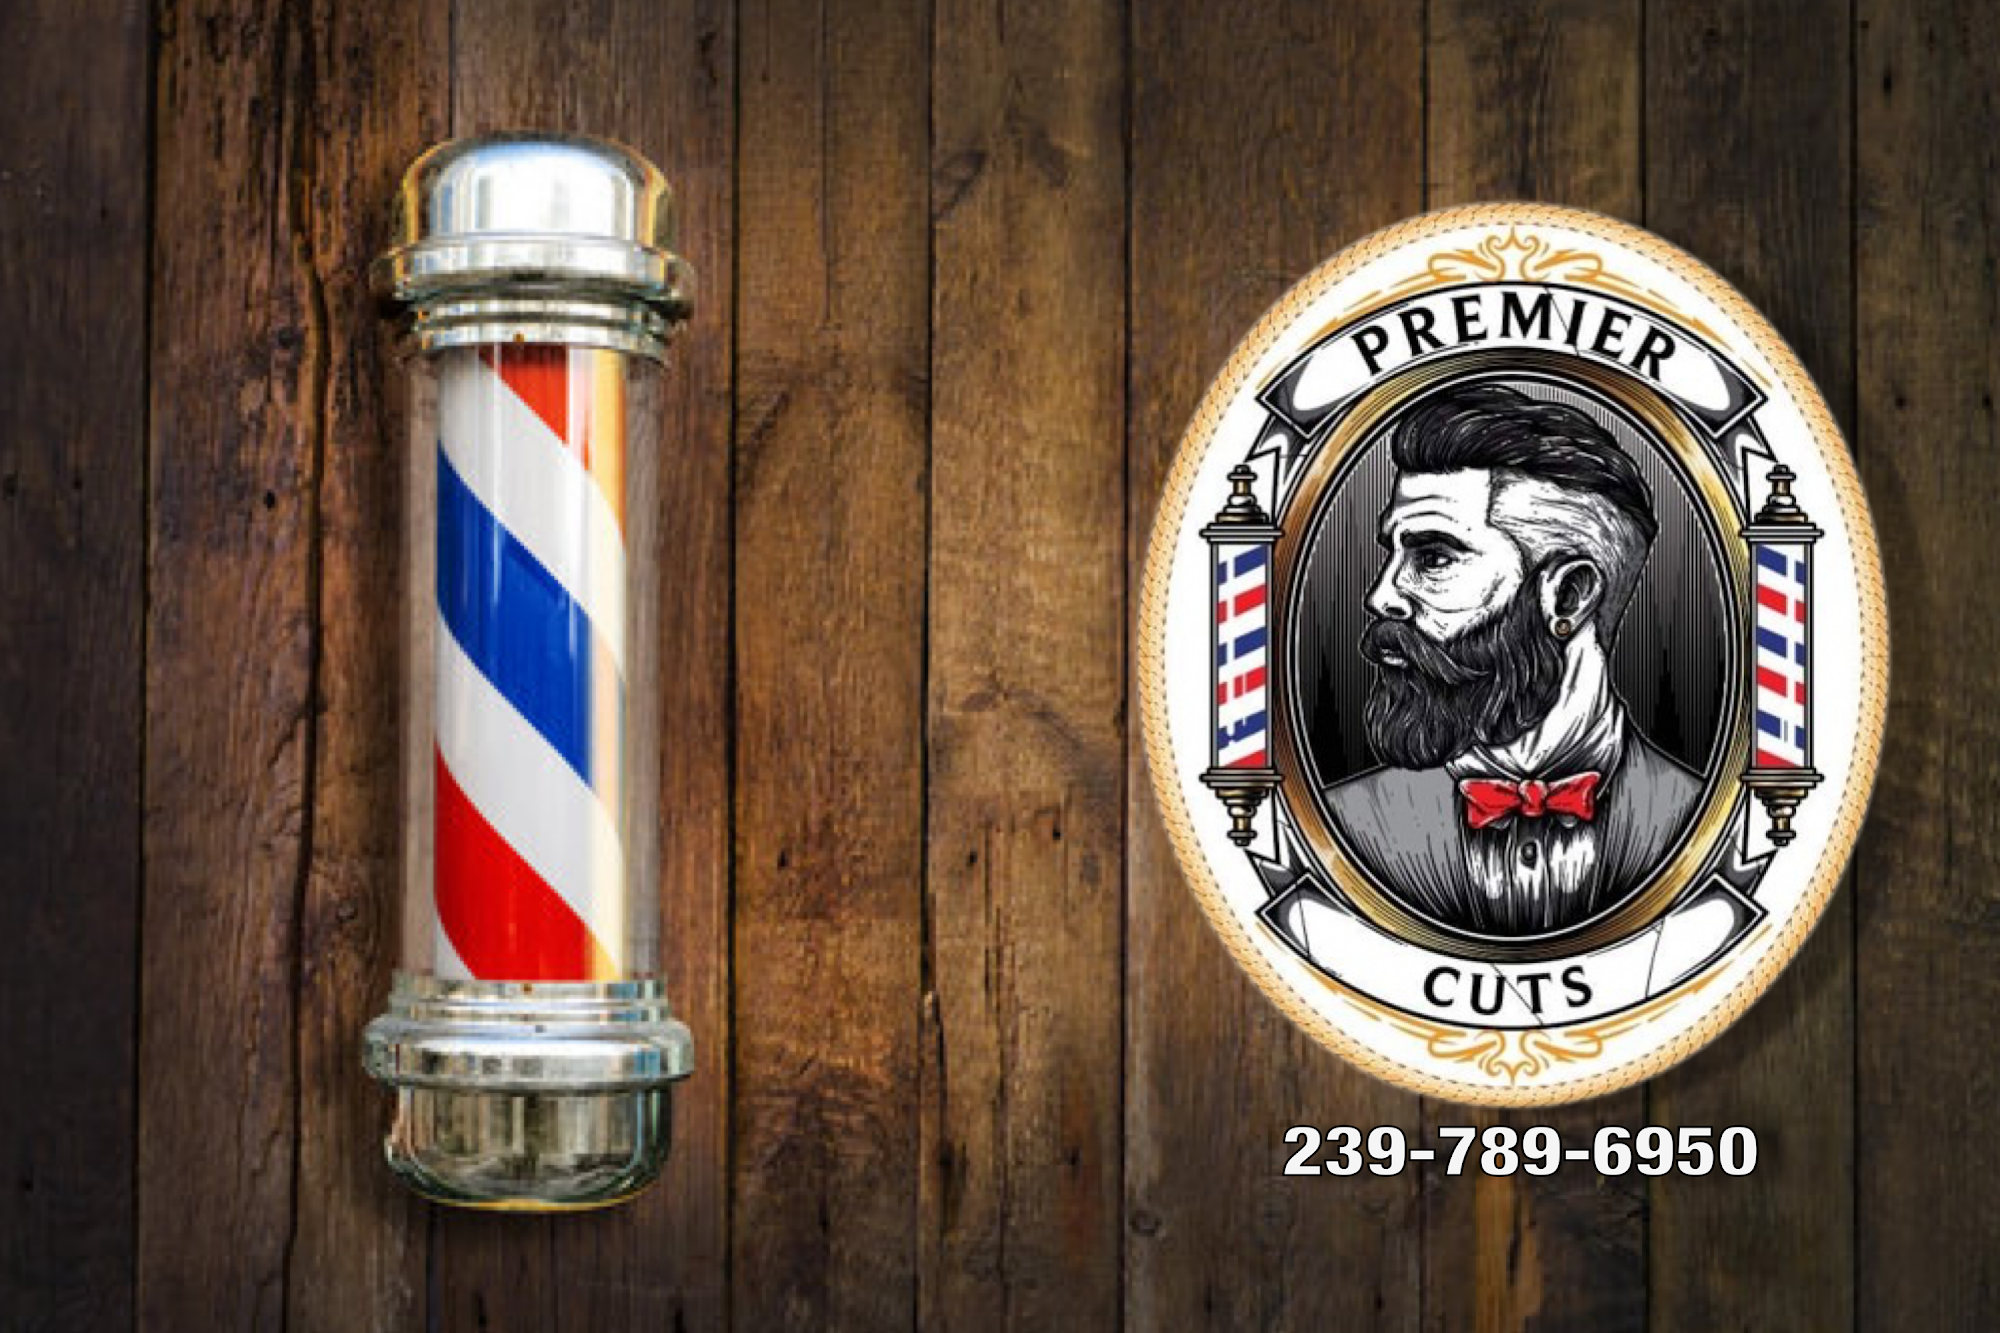 Premier Cuts Barber Shop